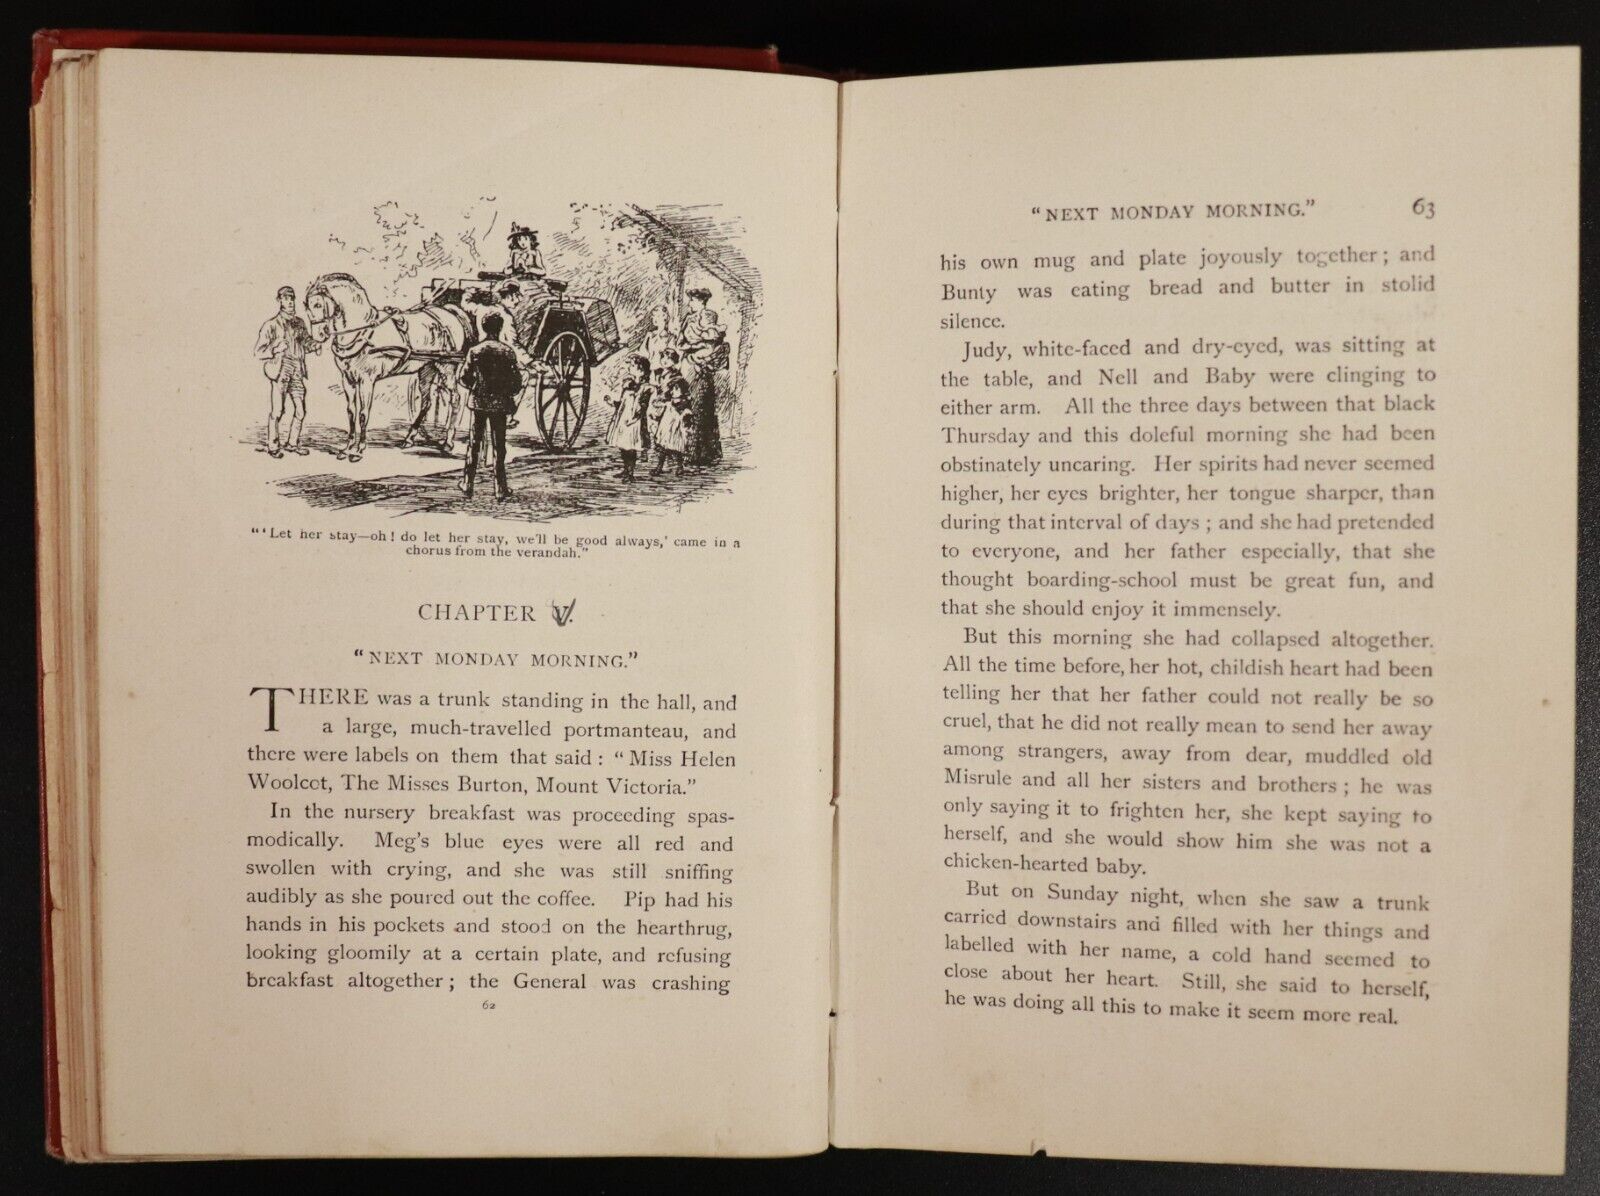 1895 Seven Little Australians by Ethel Turner Antique Australian Fiction Book